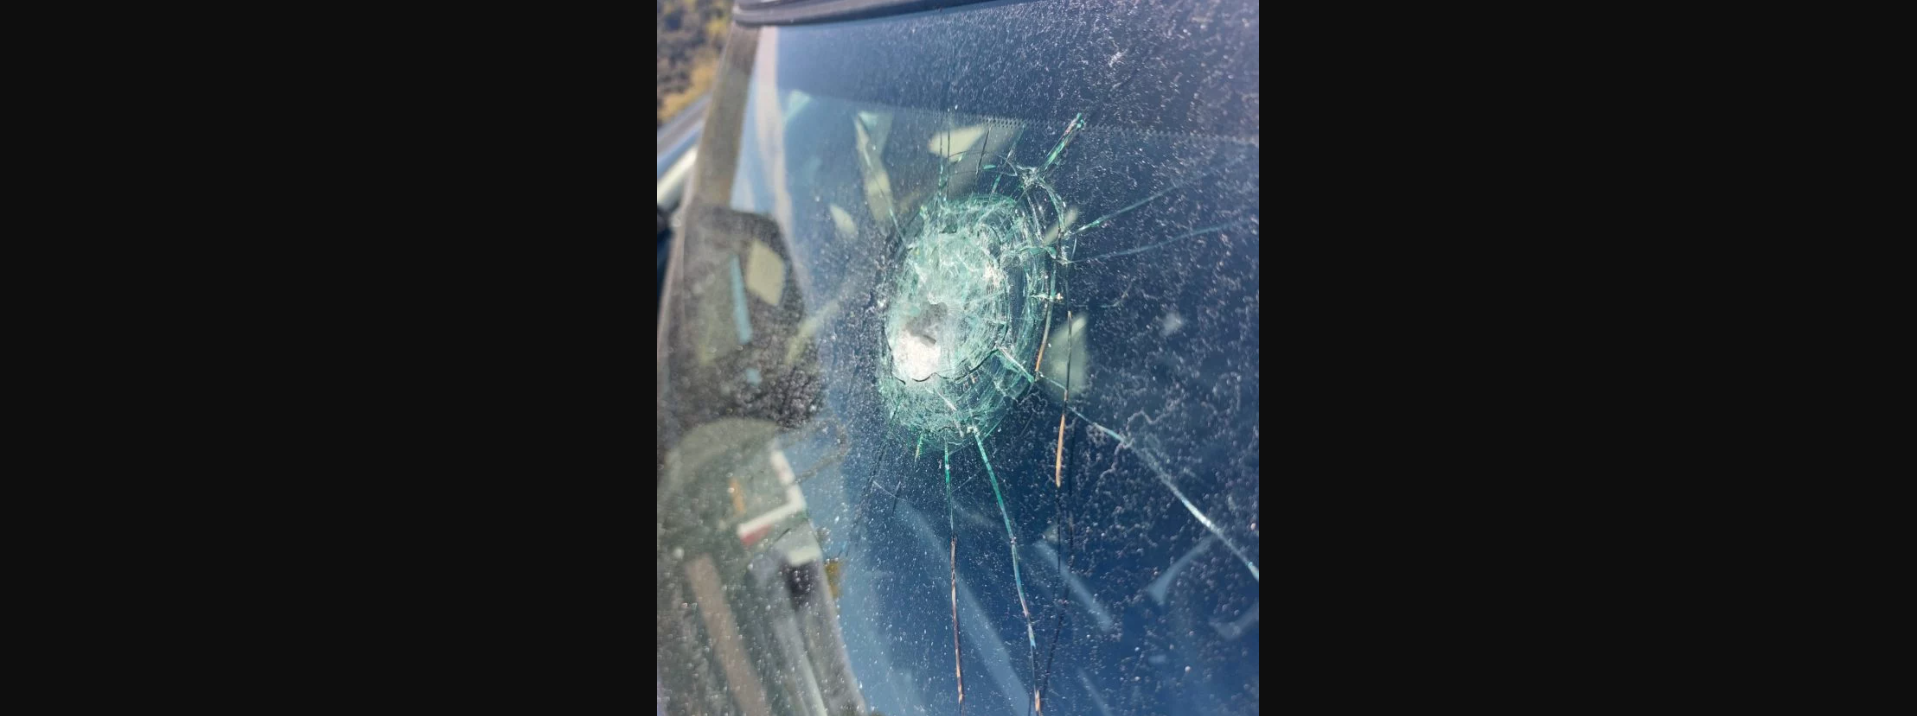 Κρήτη: «Αδέσποτη» σφαίρα καρφώθηκε σε αυτοκίνητο (φωτο)